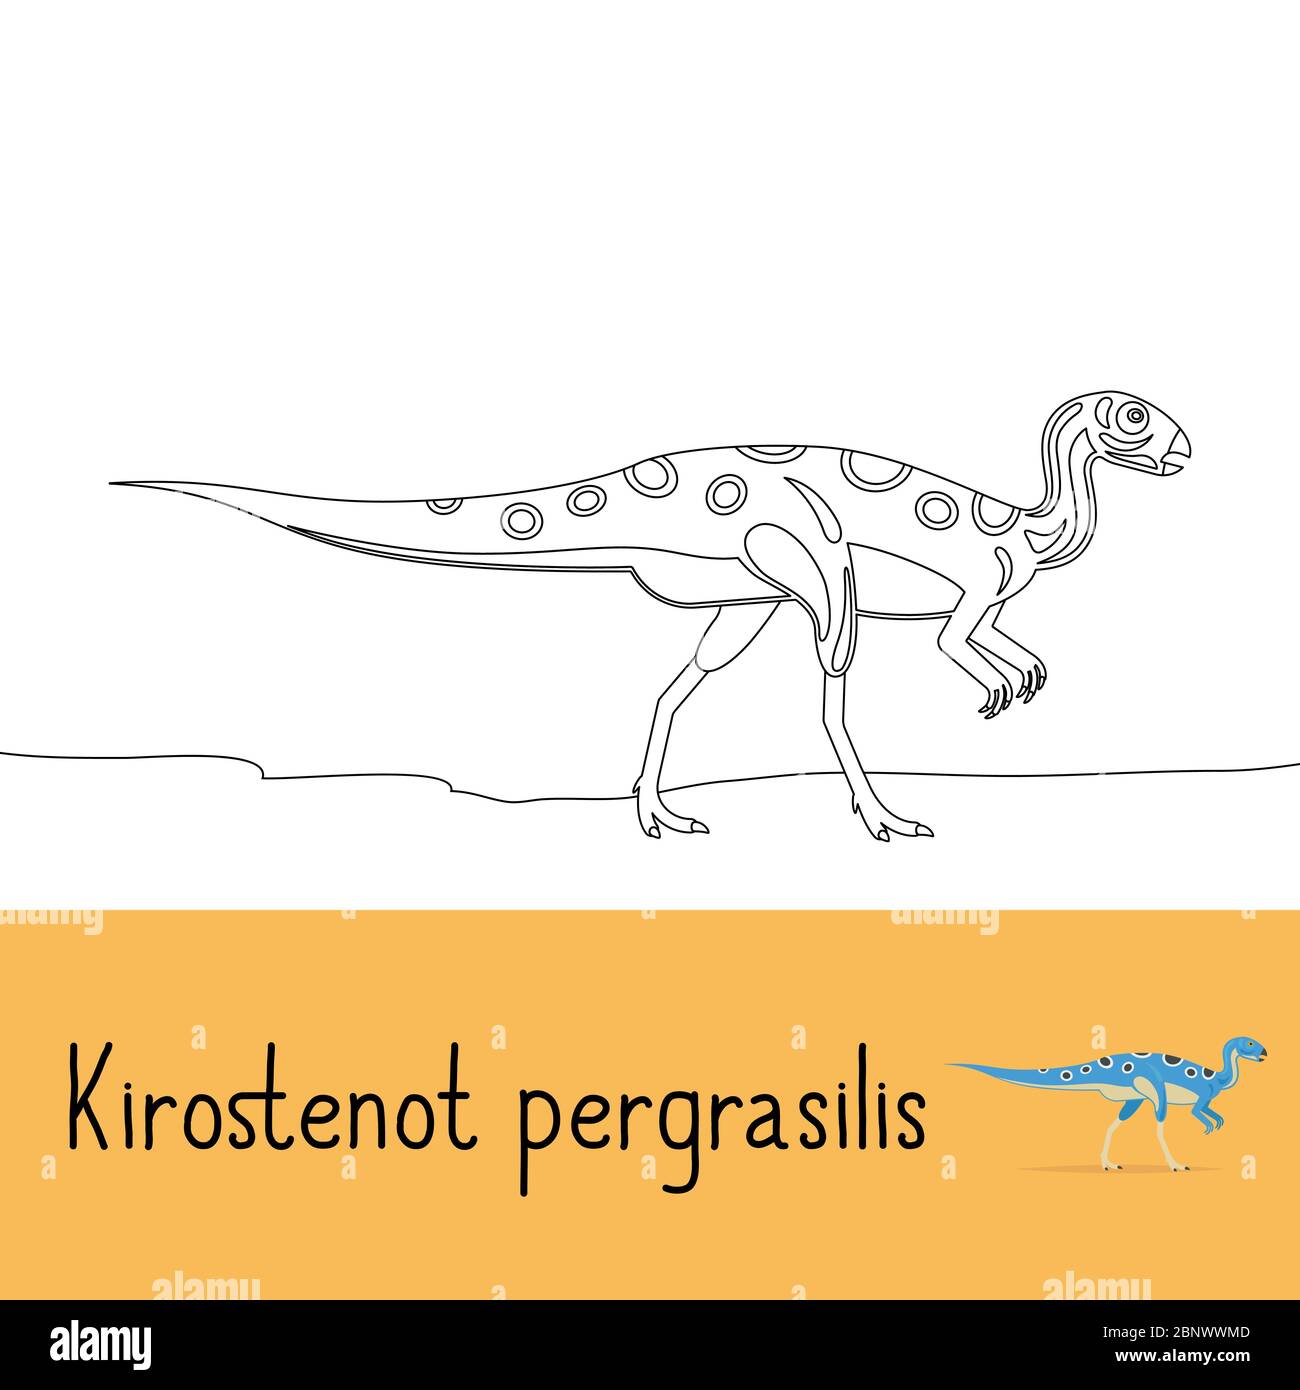 Page de coloriage pour enfants avec Kirostenot pergracilis dinosaure et aperçu coloré. Illustration vectorielle Illustration de Vecteur